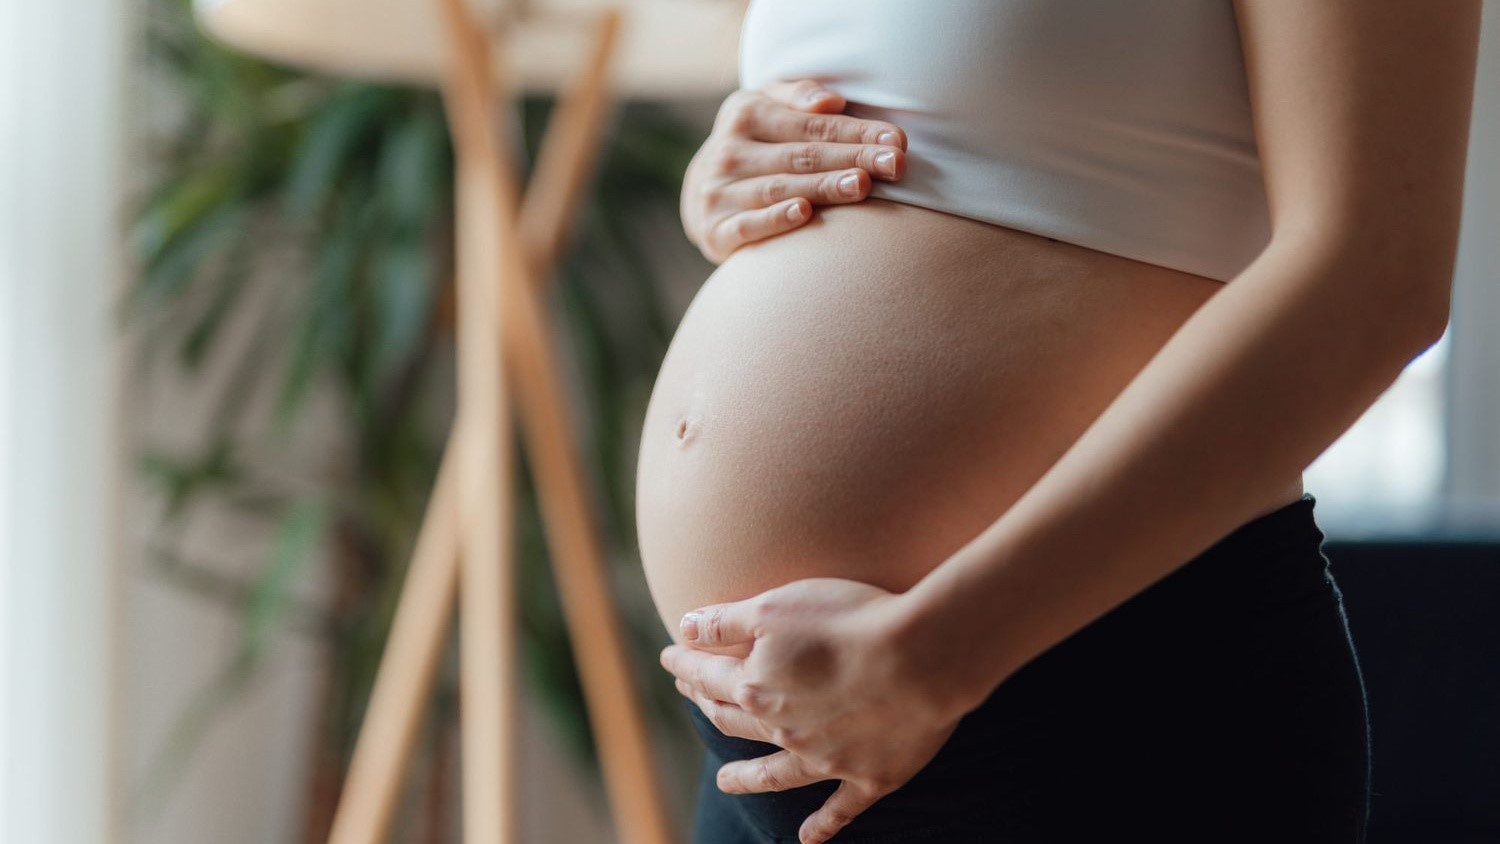 Mang thai tuần 37: Sự phát triển của thai nhi như thế nào?